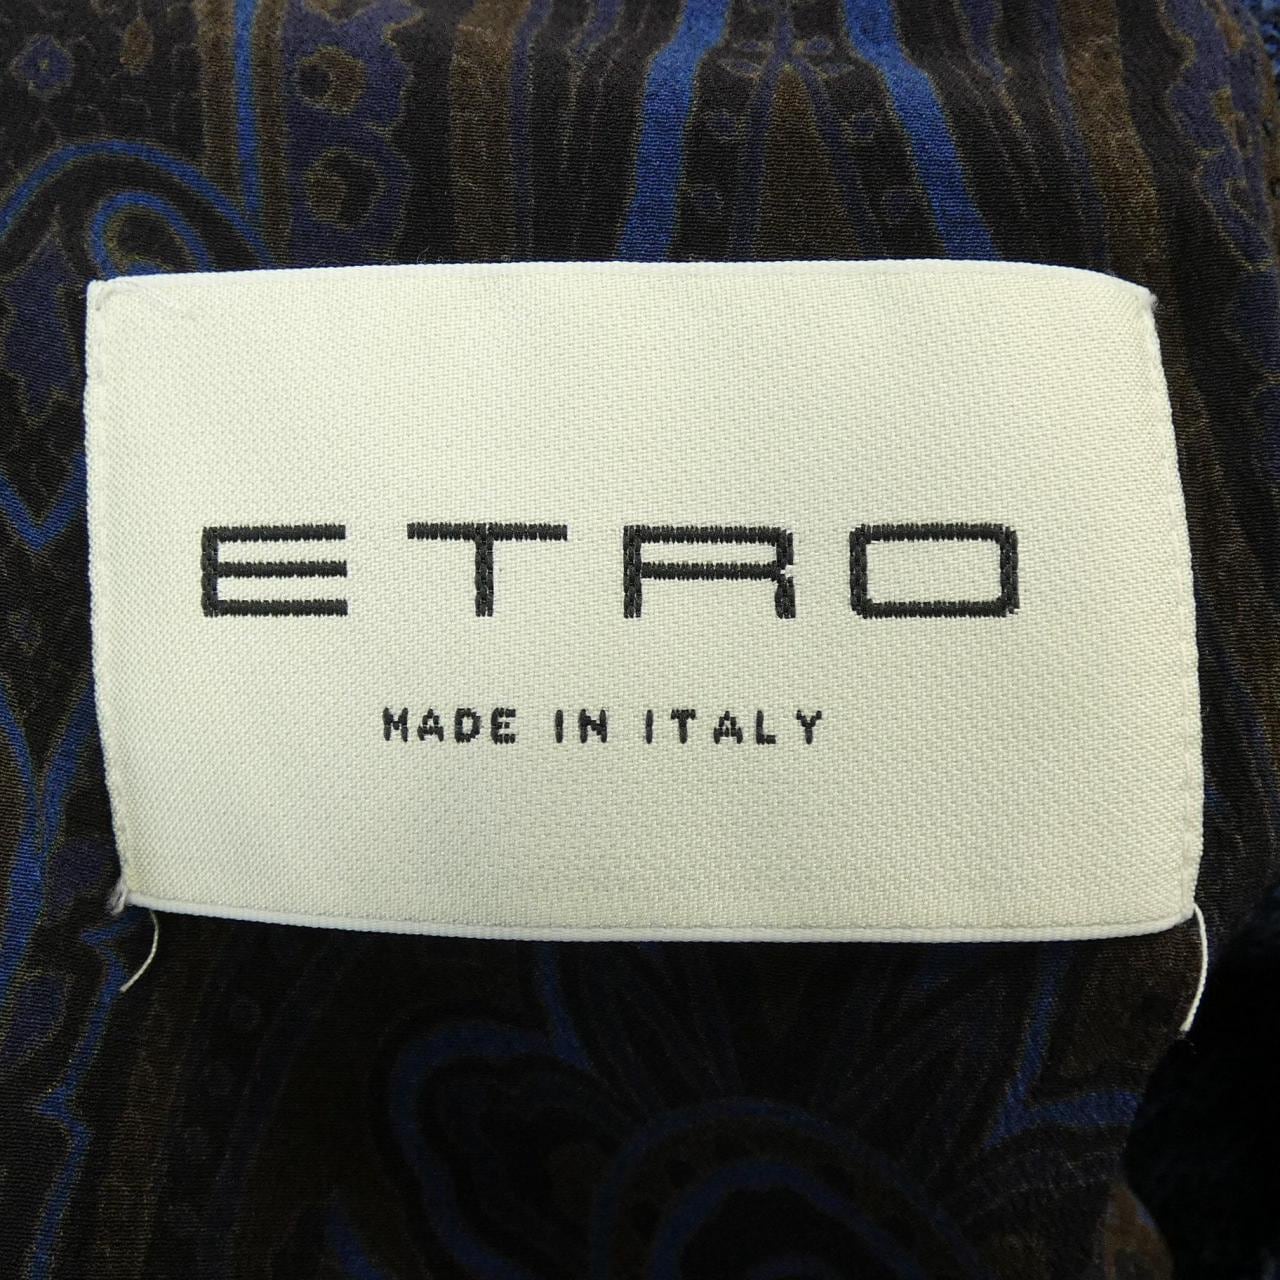 Etro ETRO jacket